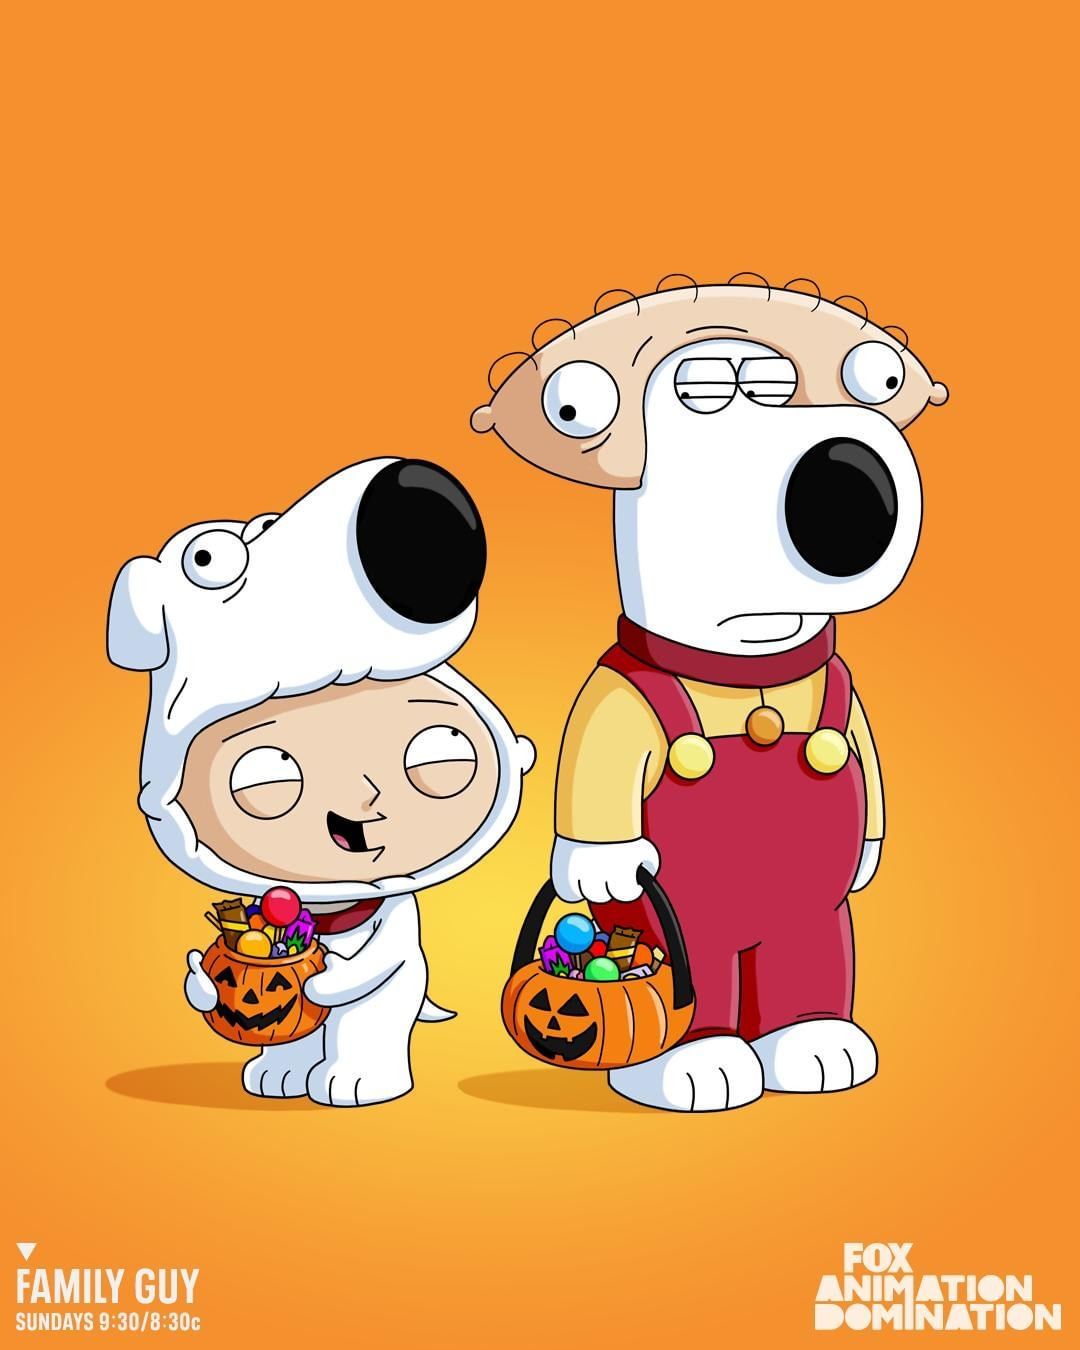 Family Guy Halloween. Family guy cartoon, Brian family guy, Family guy